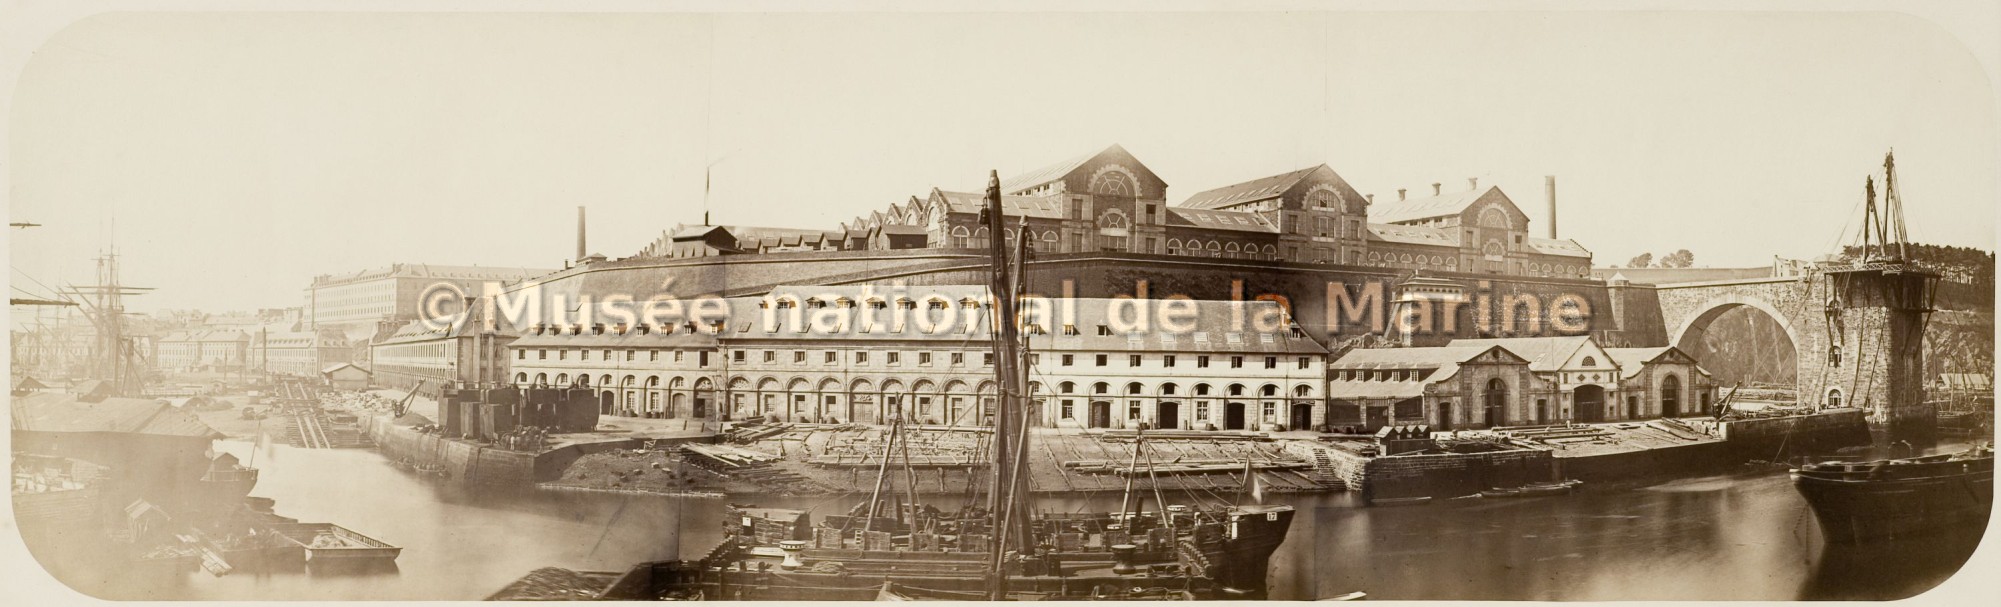 Brest, vue des ateliers des Capucins, de l'atelier de la mâture et du viaduc